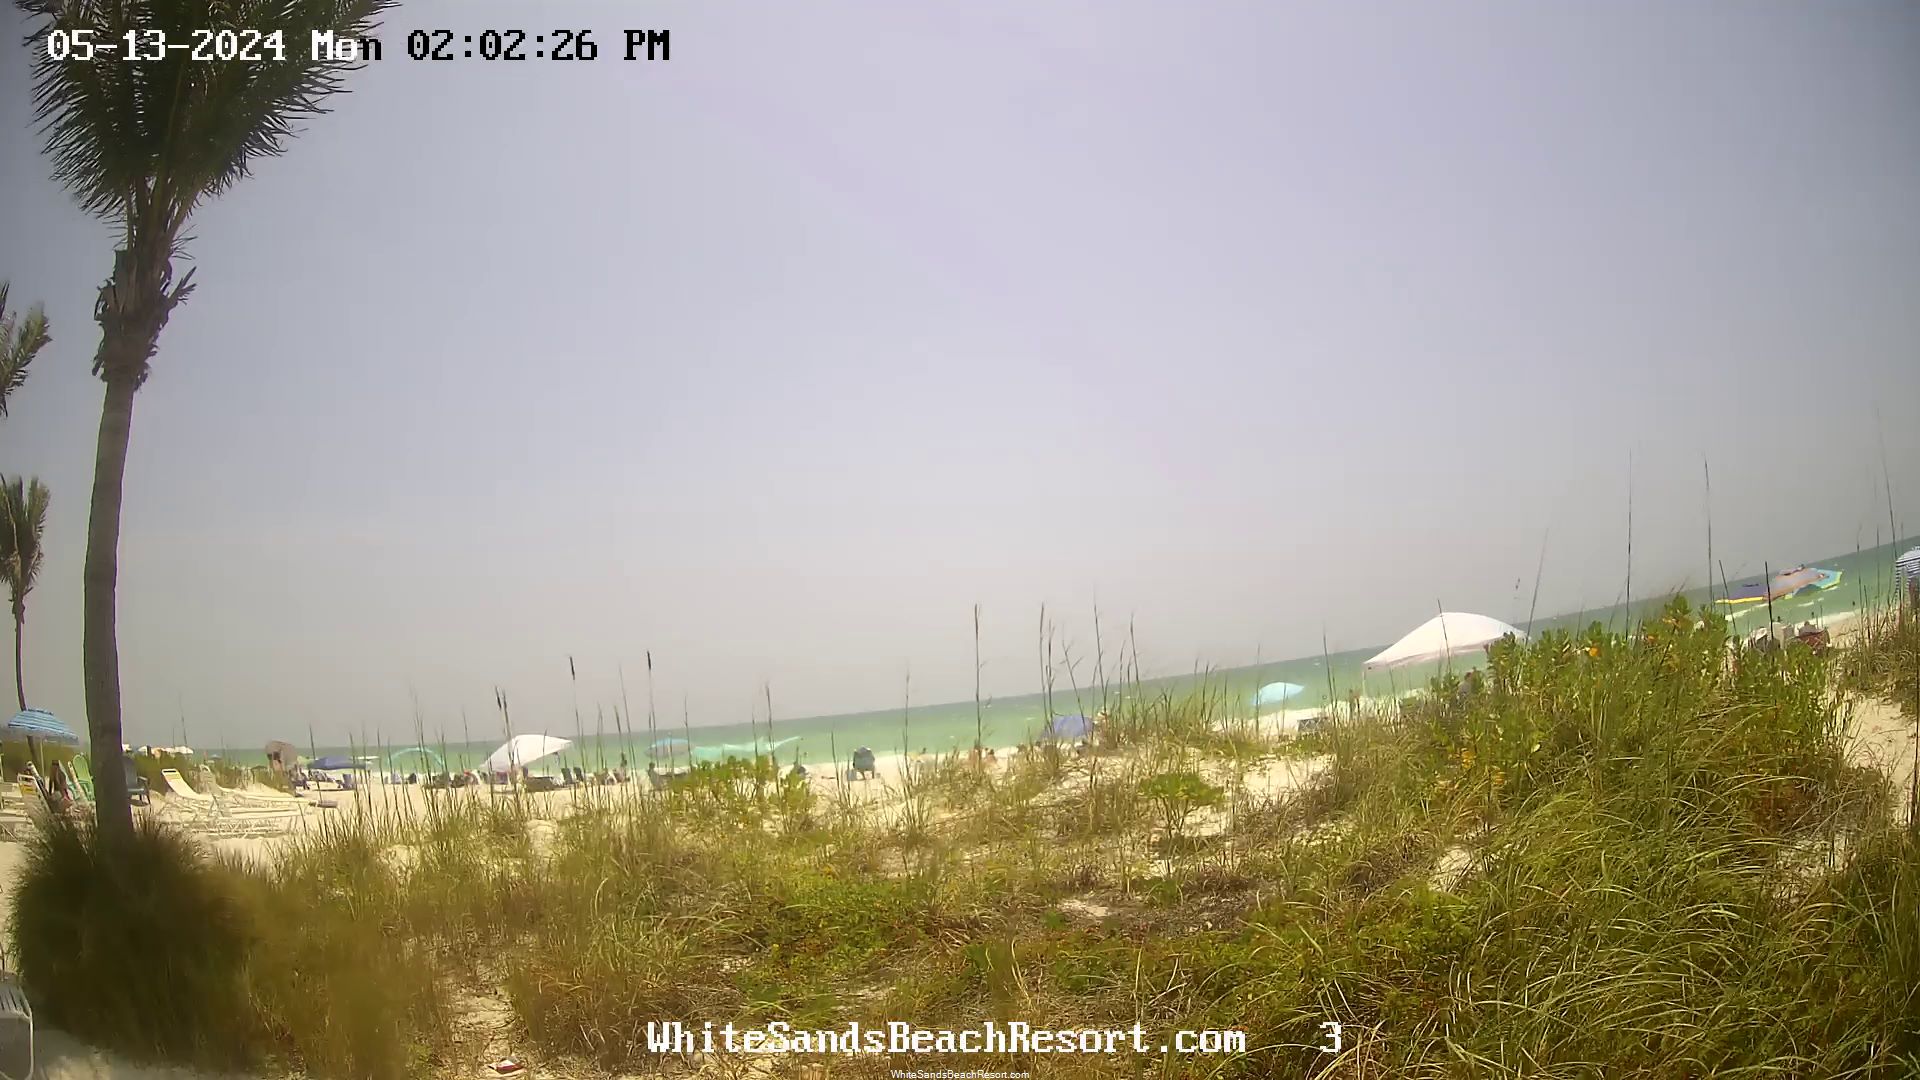 Holmes Beach, Florida Vie. 13:56